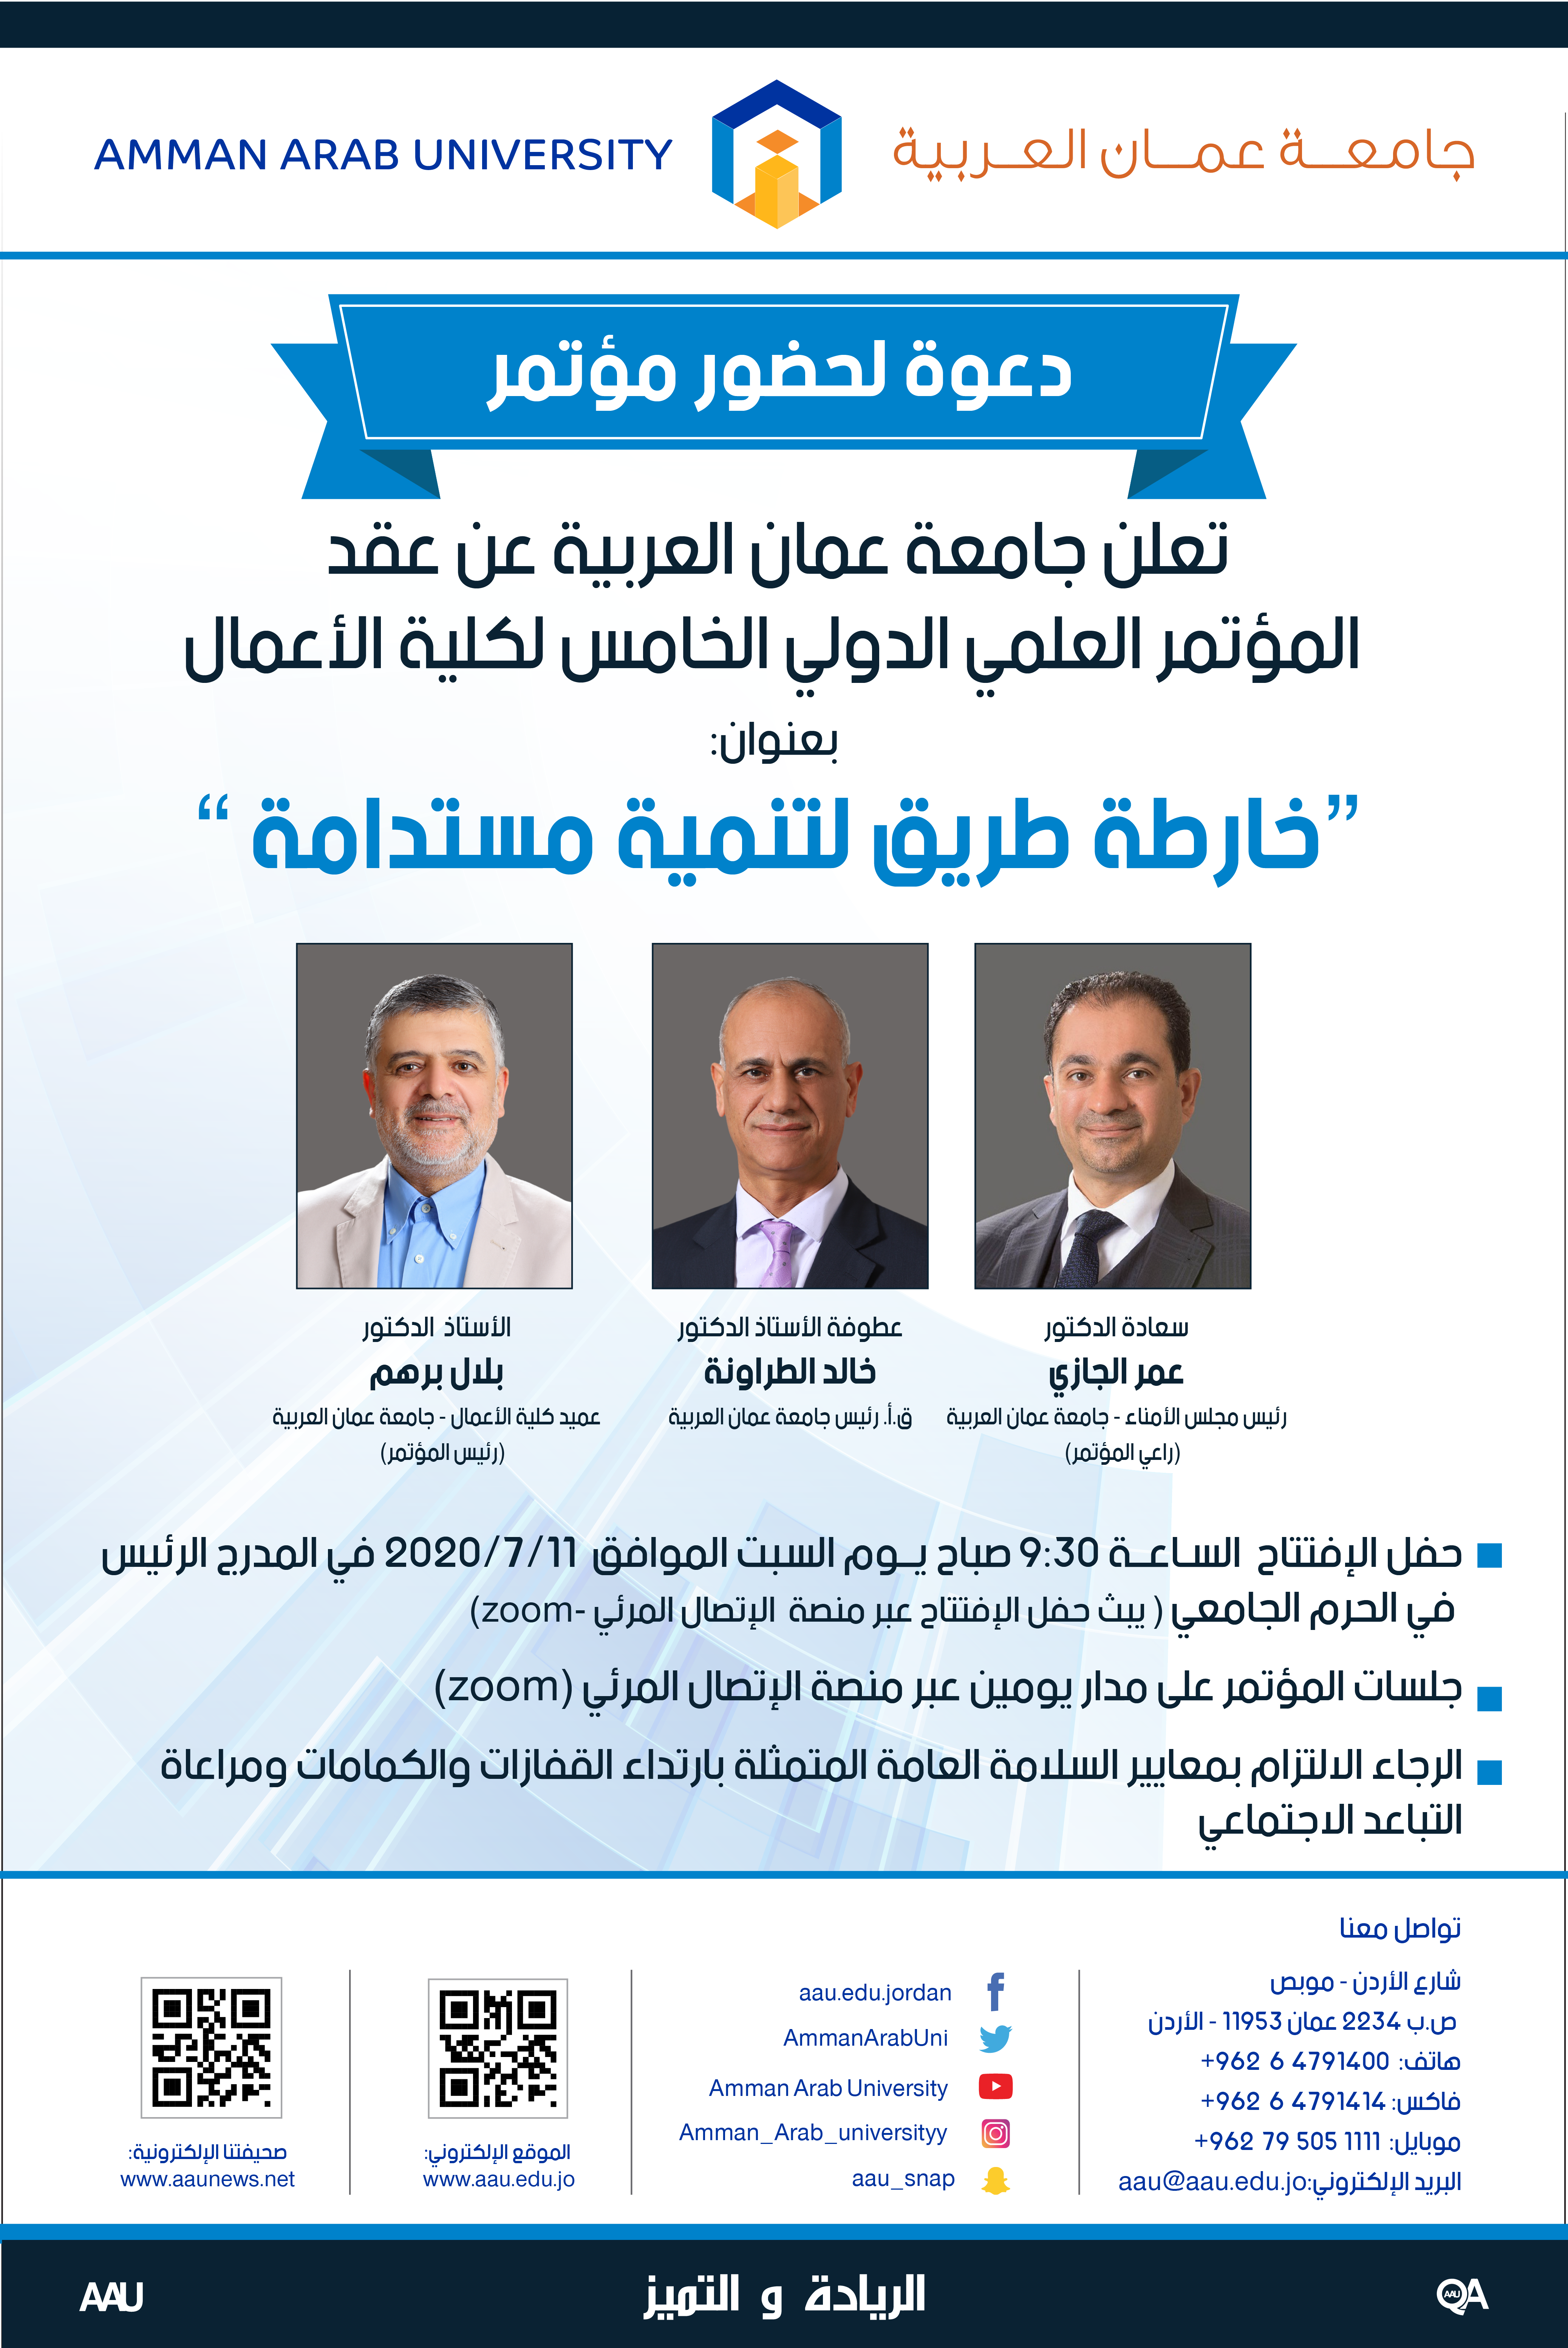 تعلن جامعة عمان العربية عن عقد المؤتمر العلمي الدولي الخامس لكلية الأعمال بعنوان ” خارطة طريق لتنمية مستدامة”